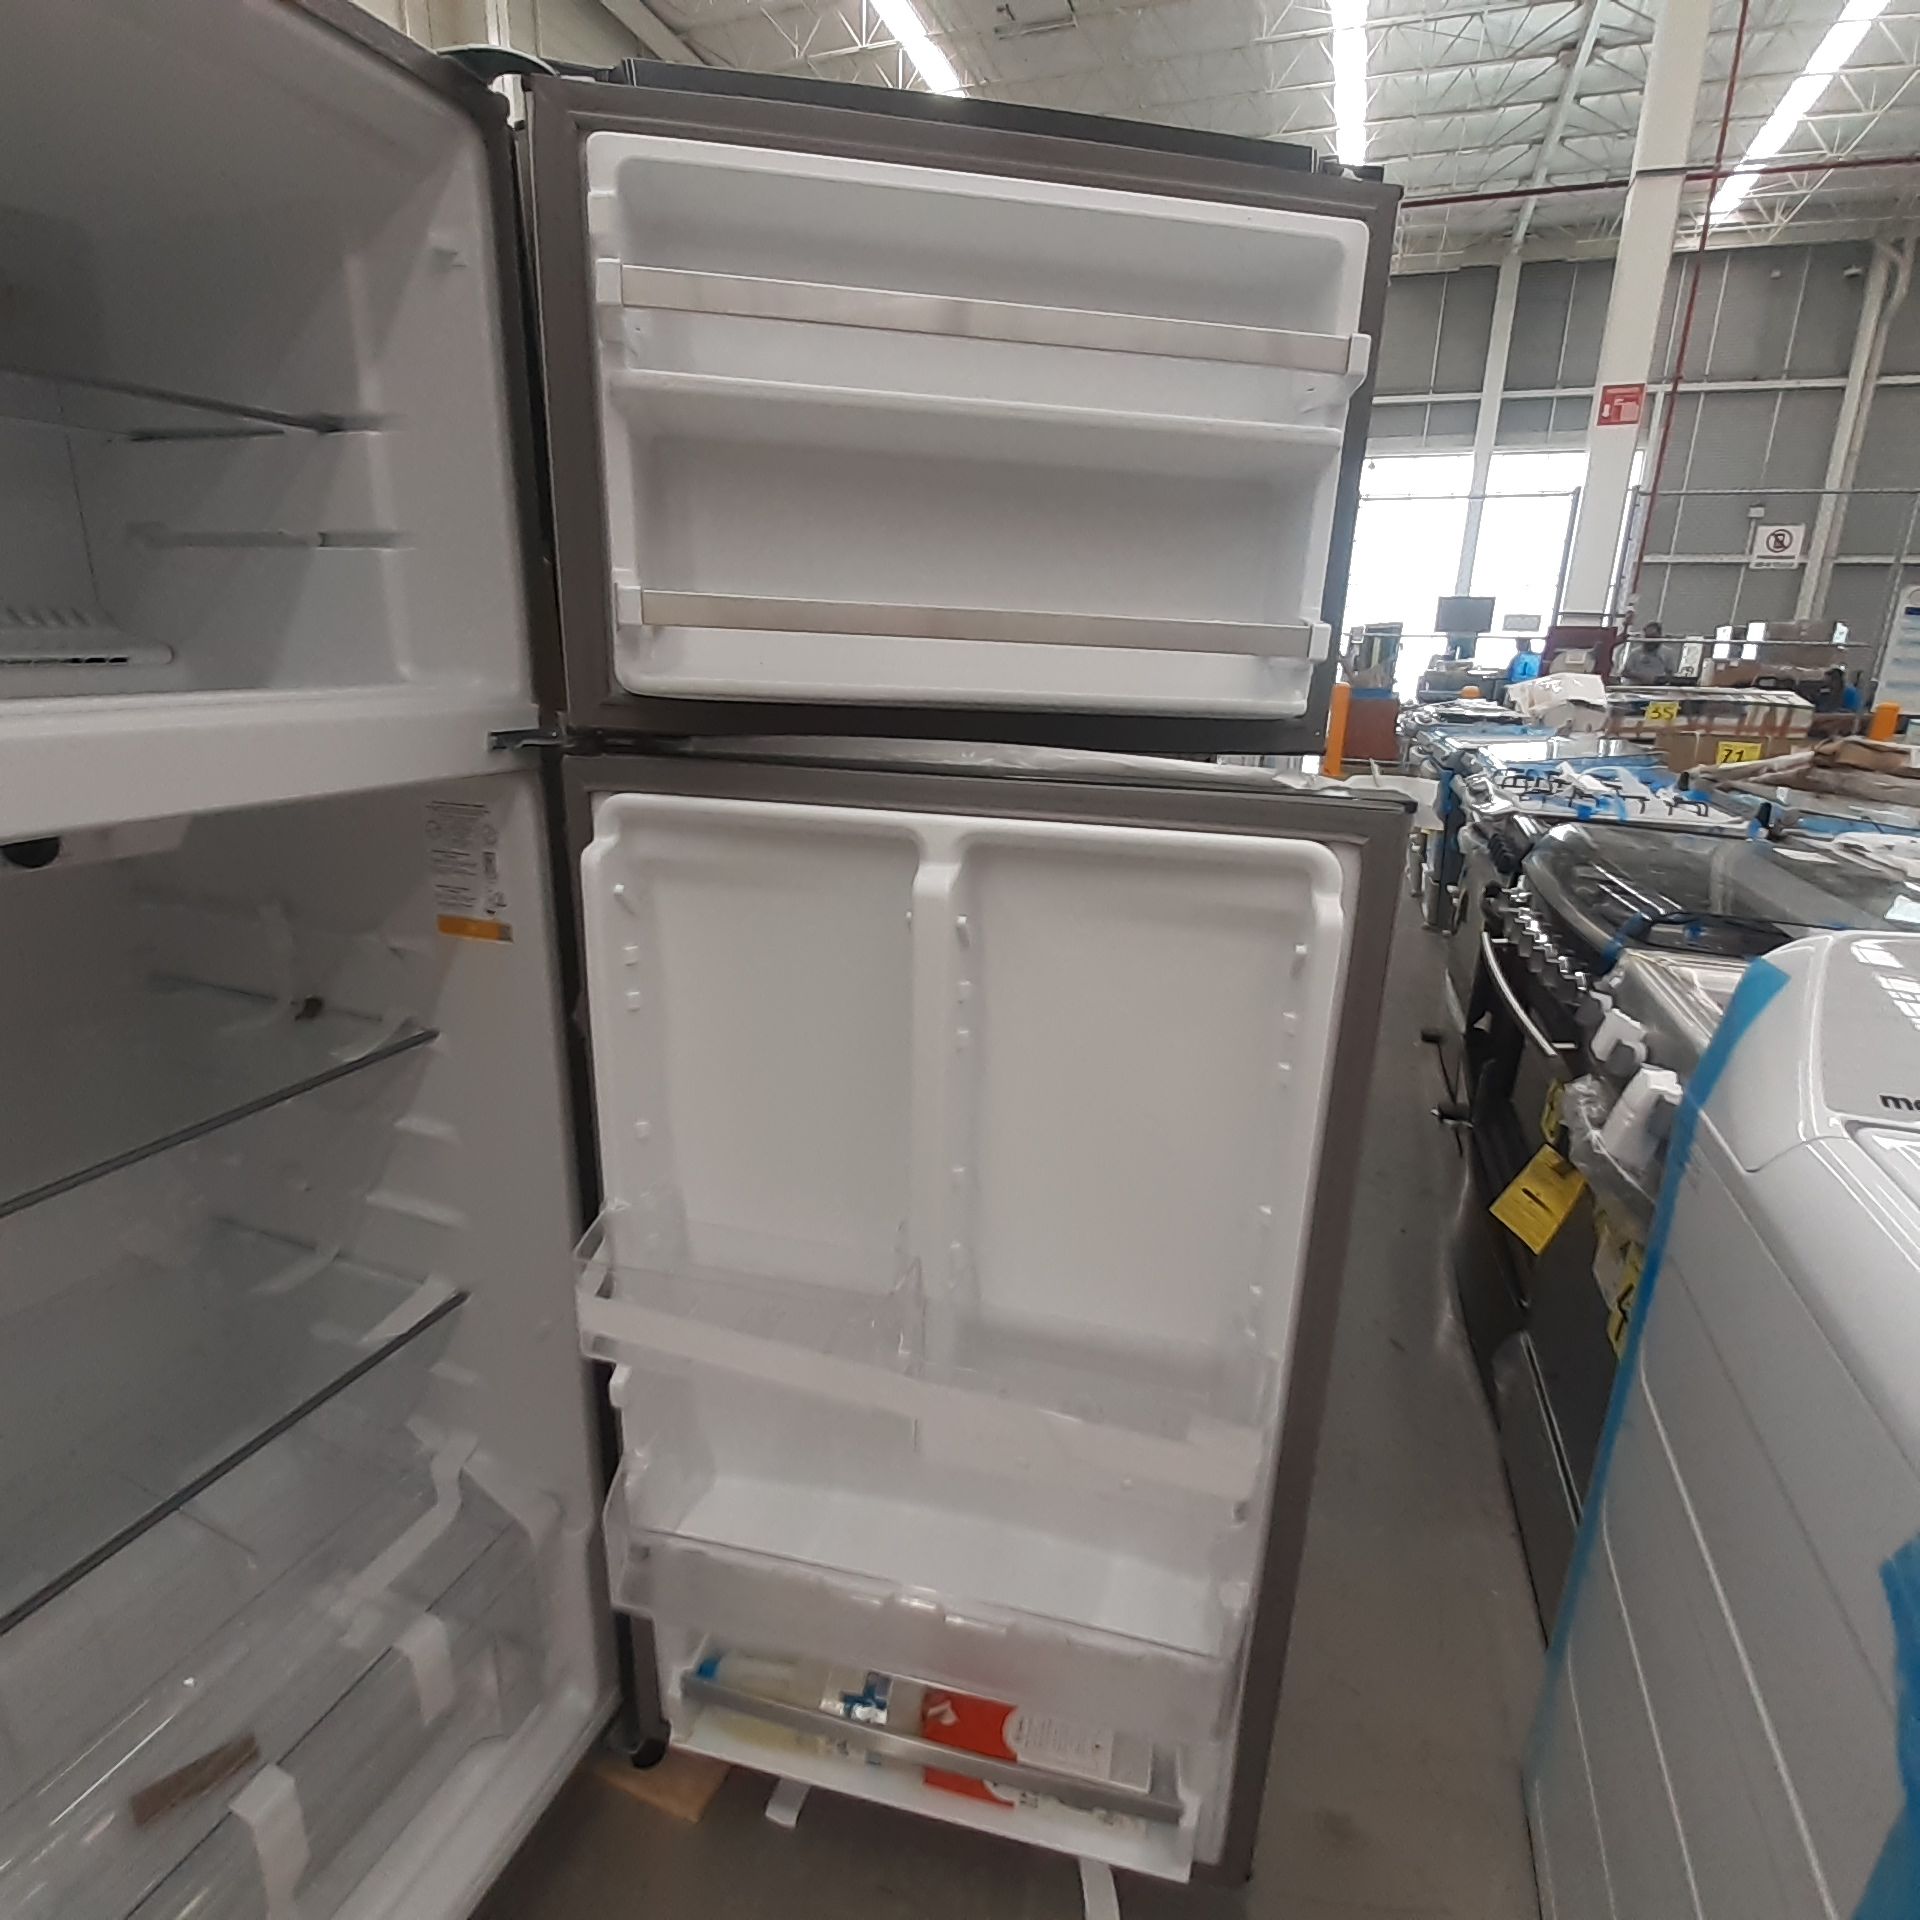 Lote De 3 Refrigeradores: 1 Refrigerador Marca Whirlpool, 1 Refrigerador Marca Mabe, 1 Refrigerador - Image 11 of 22